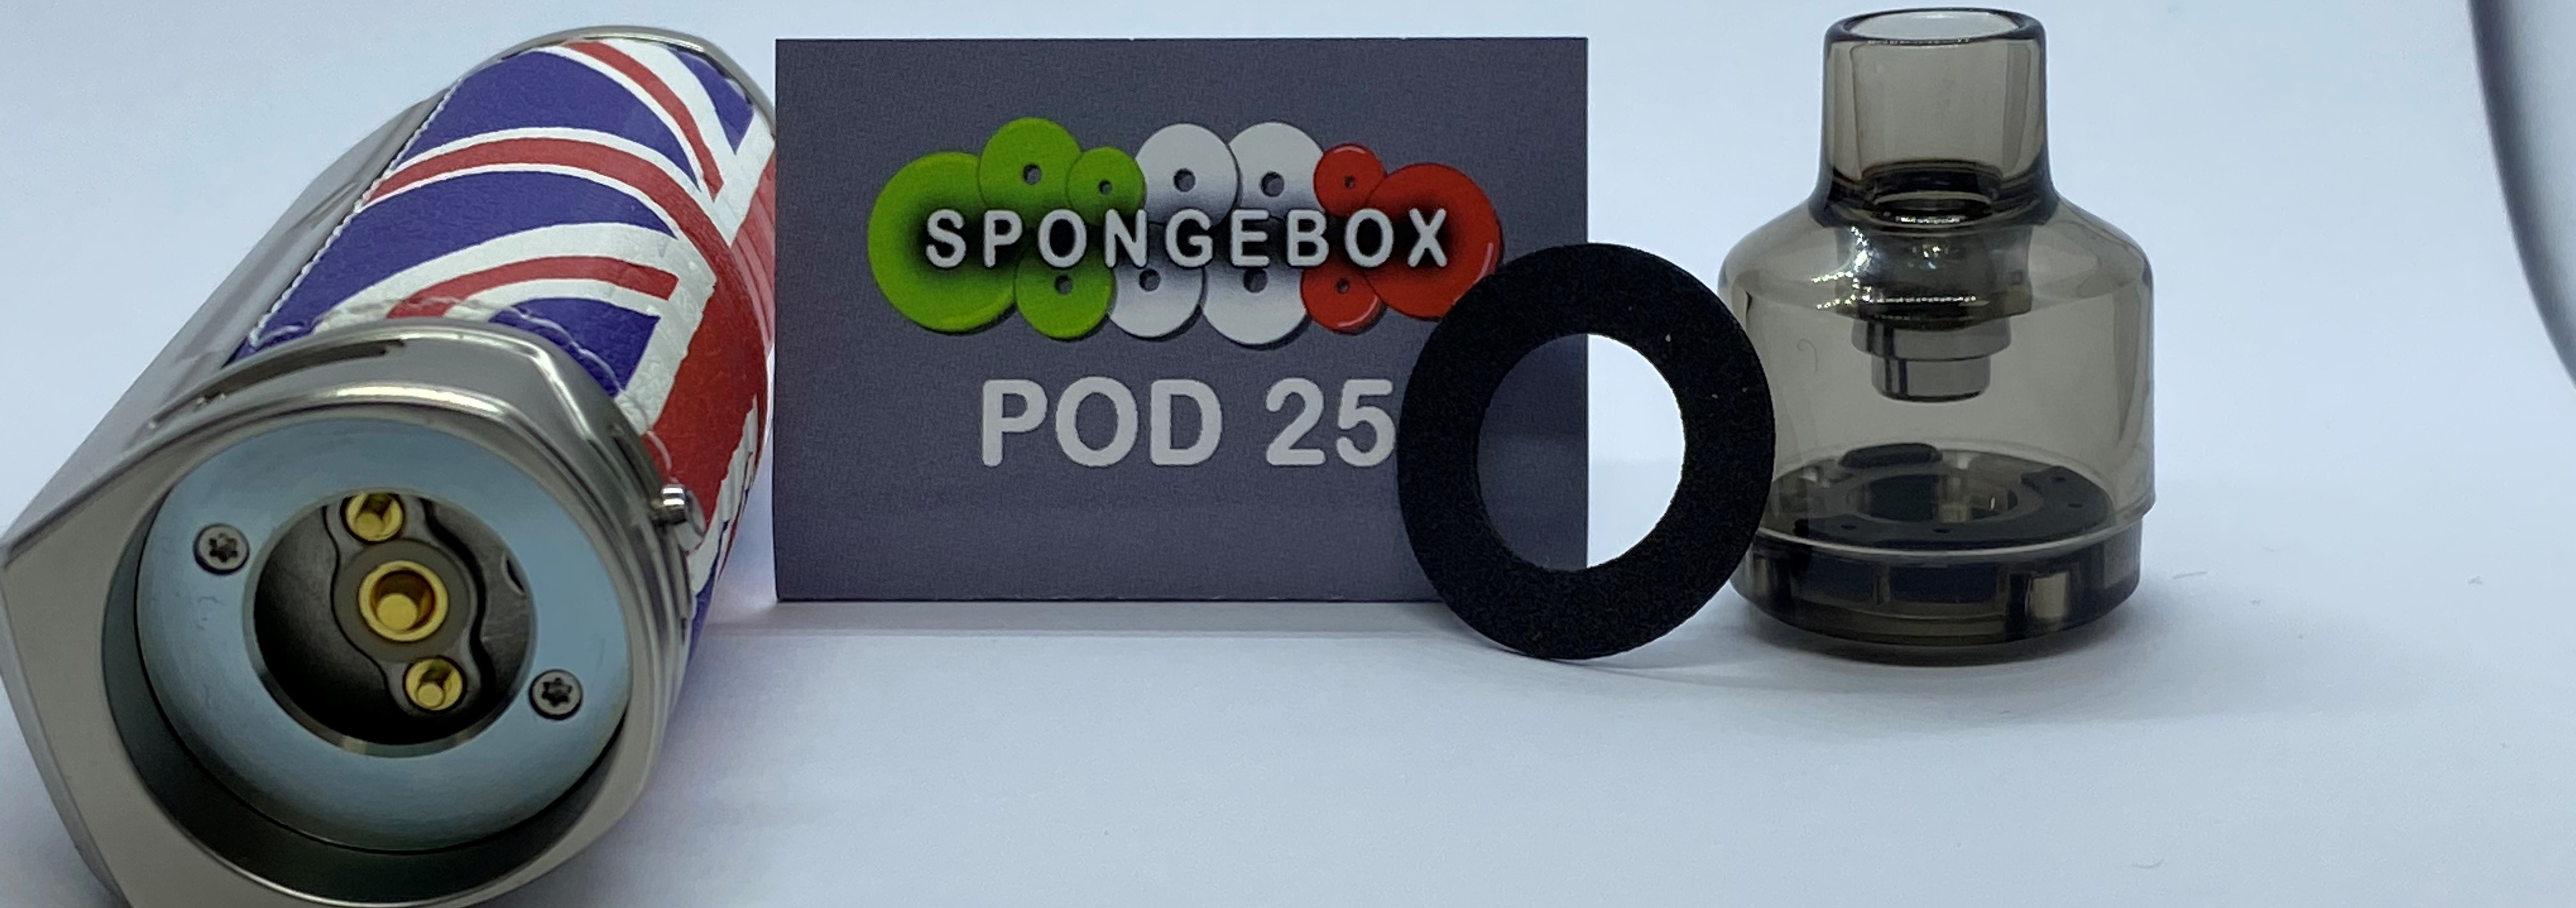 Spongebox® POD 25 va posizionata nella base della Pod Mod